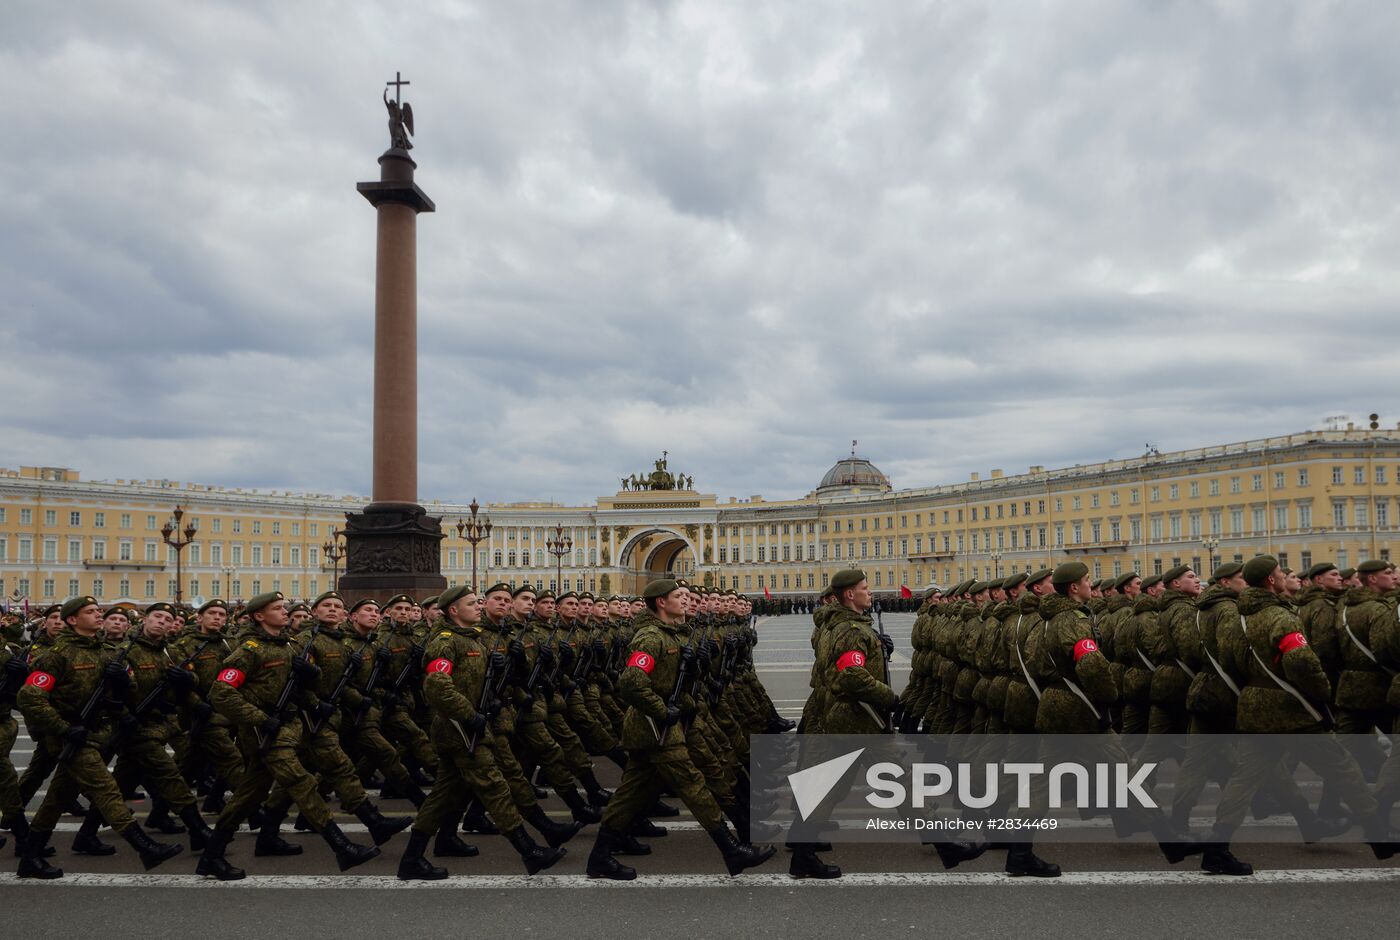 Parade practice in St. Petersburg